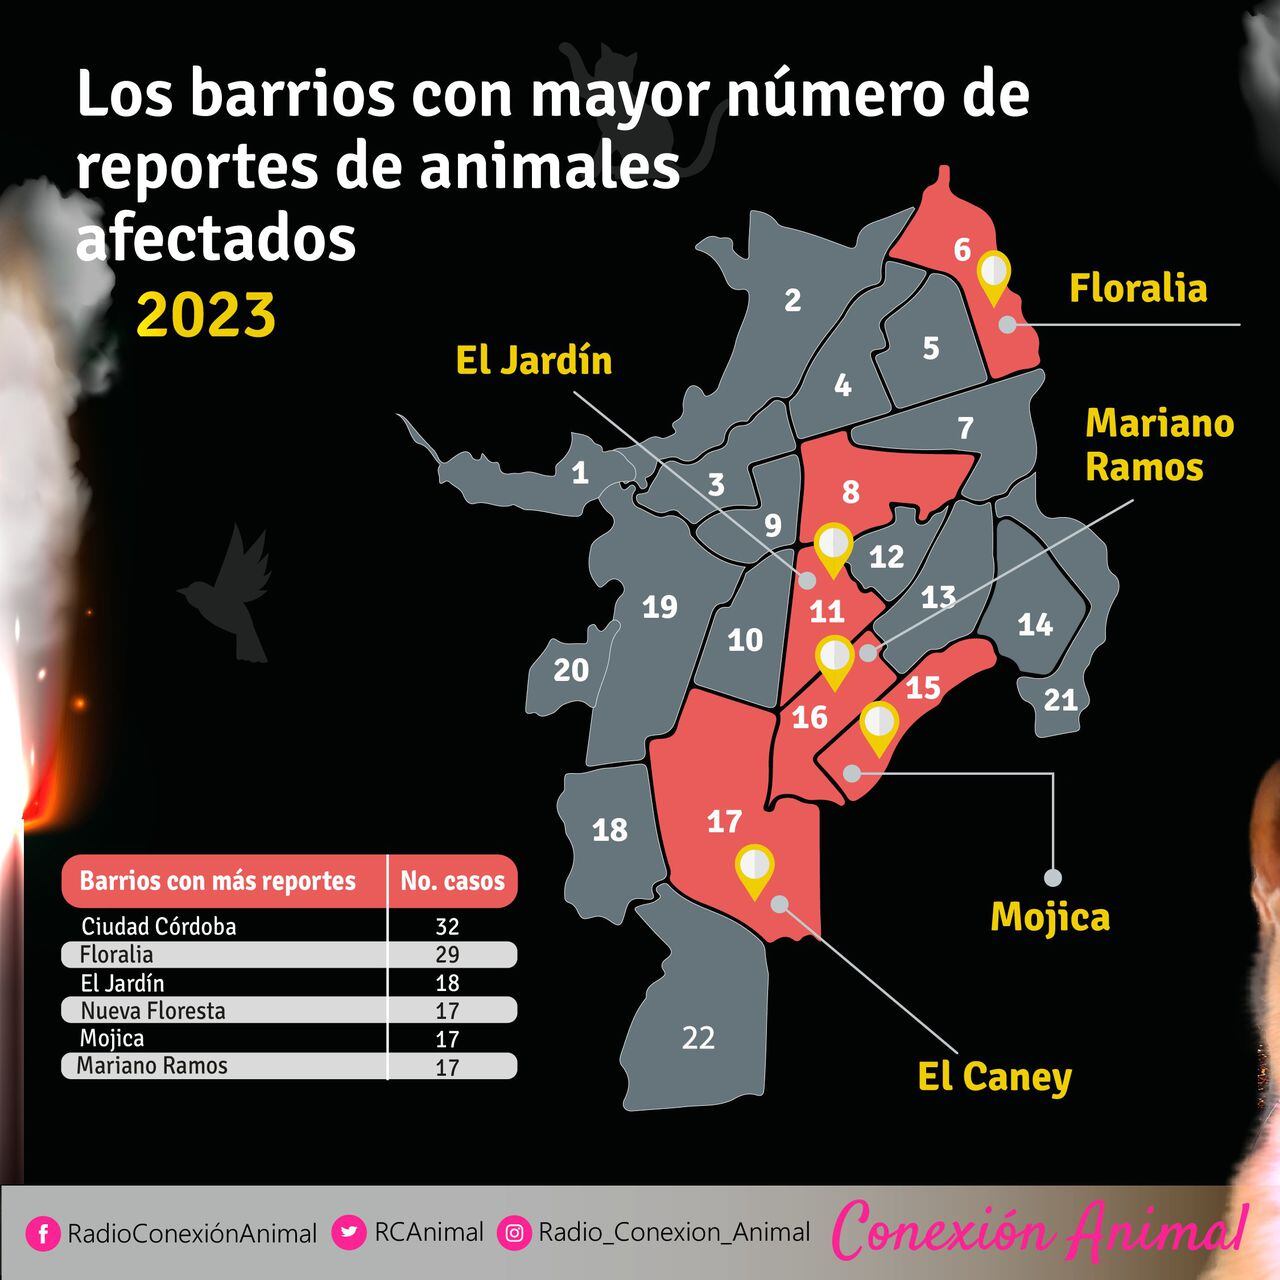 Barrios donde más reportes de animales afectados por pólvora hubo.